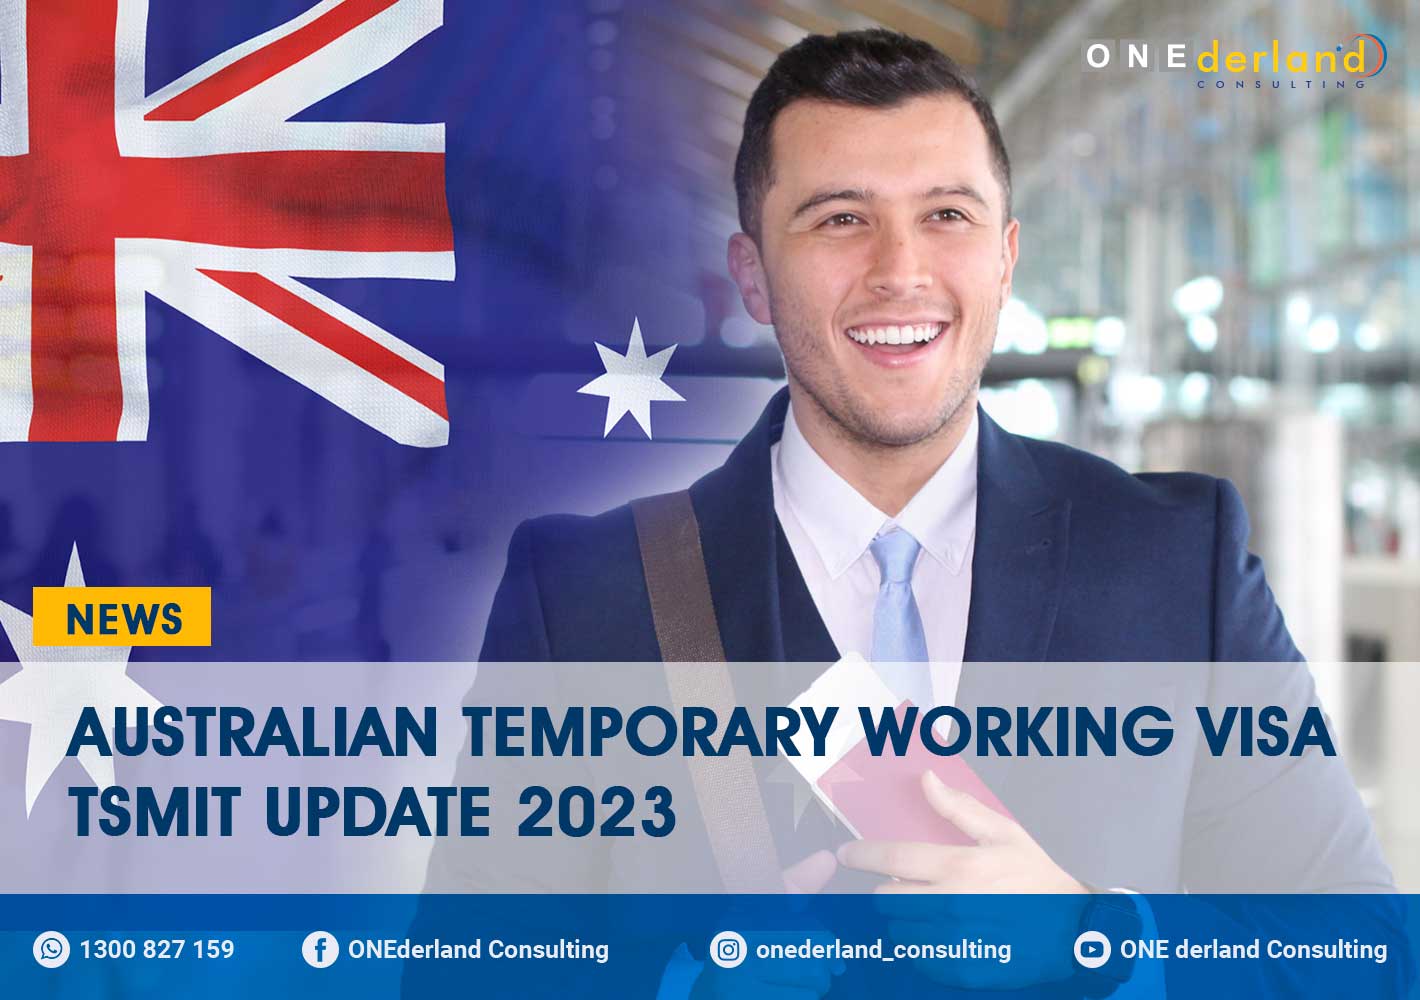 Australian Temporary Working Visa TSMIT Update 2023